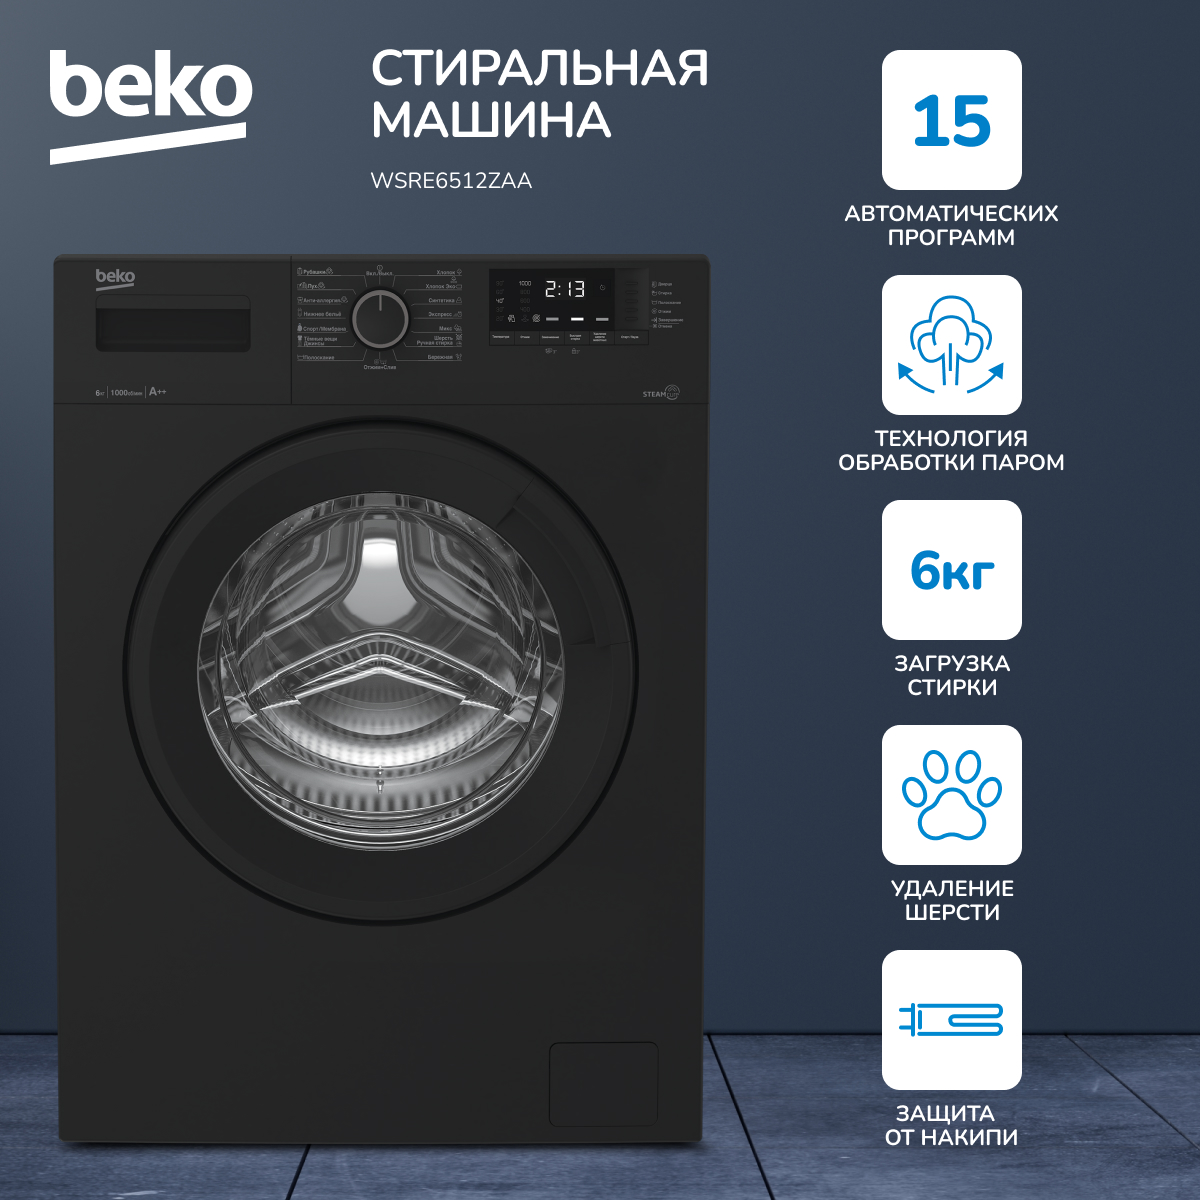 Стиральная машина Beko WSRE6512ZAA черный стиральная машина beko wspe6h616w белая мешок для стирки белья